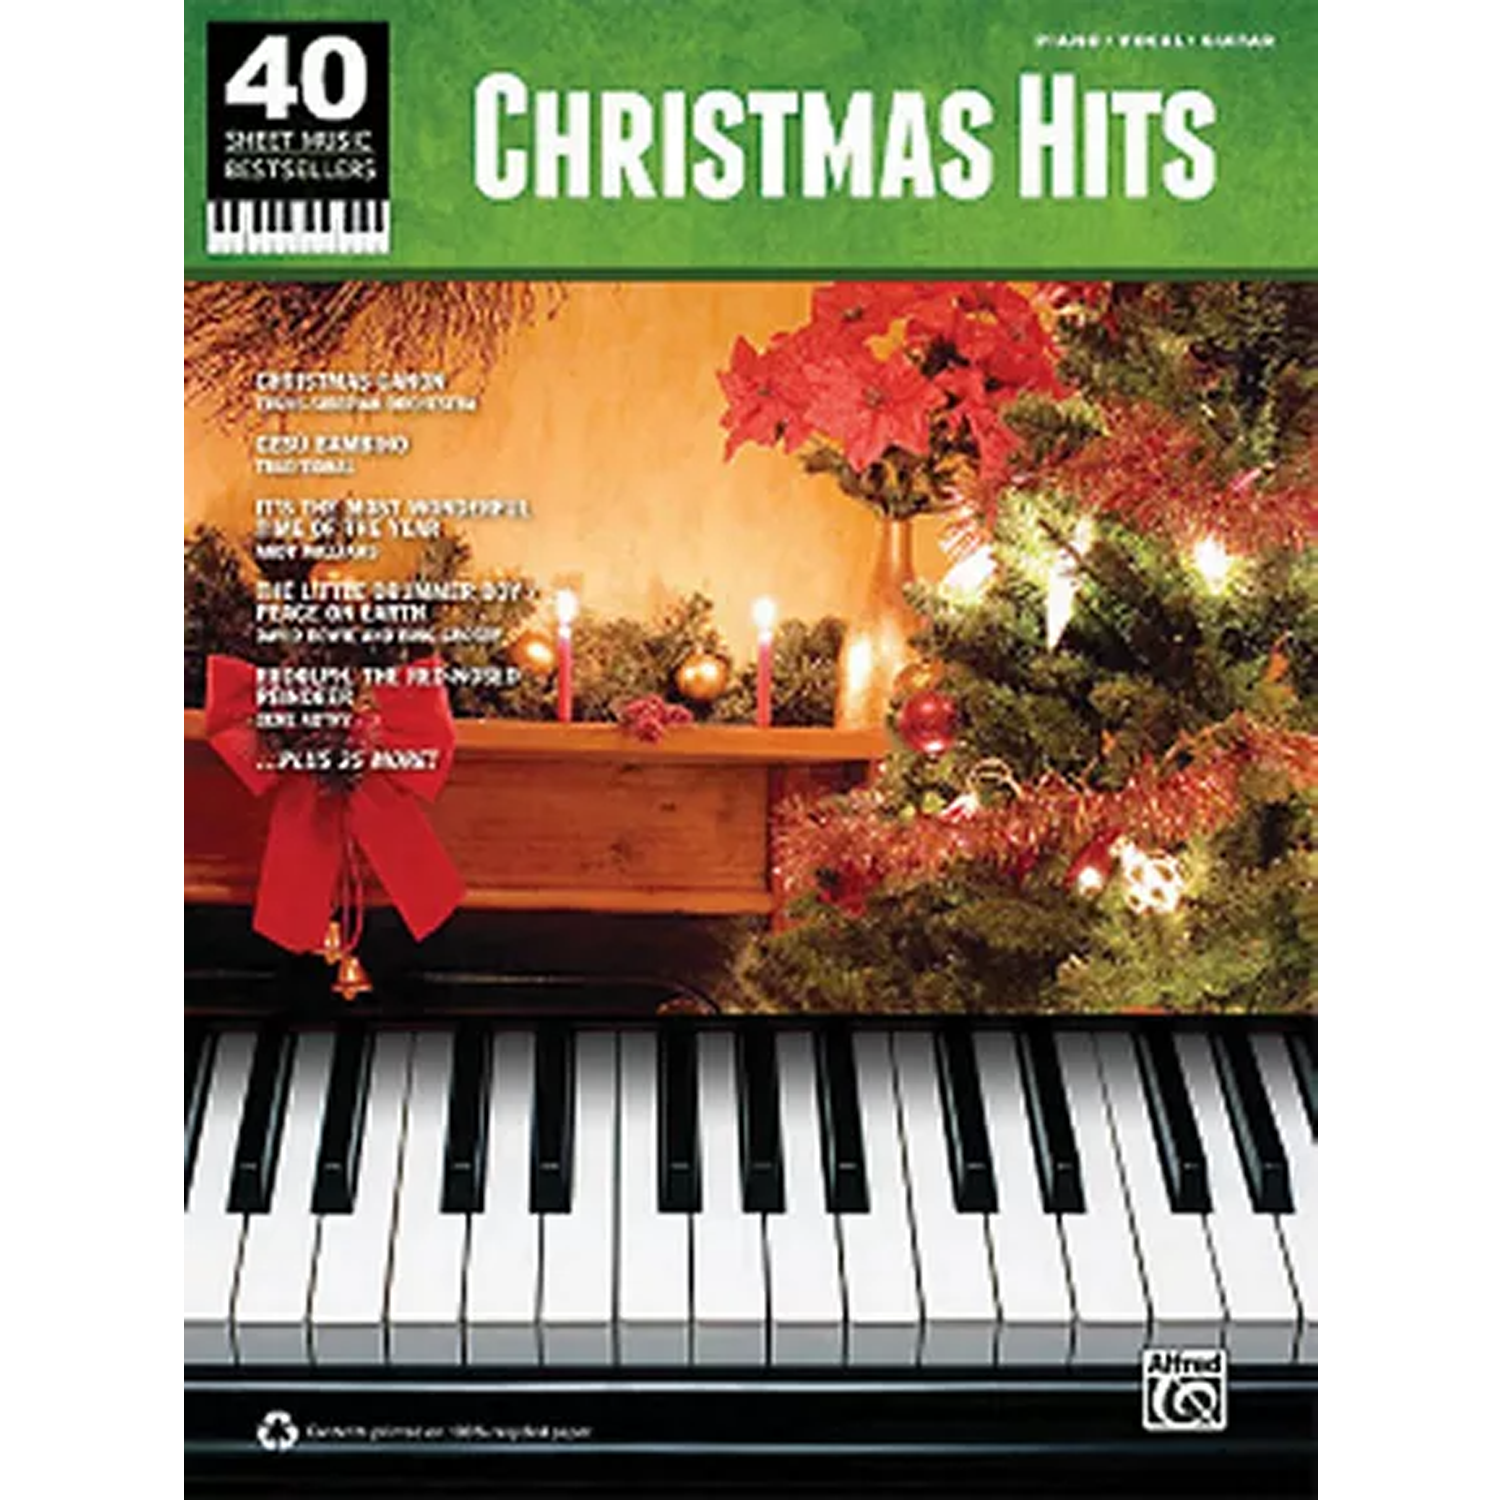 40 Christmas Hits